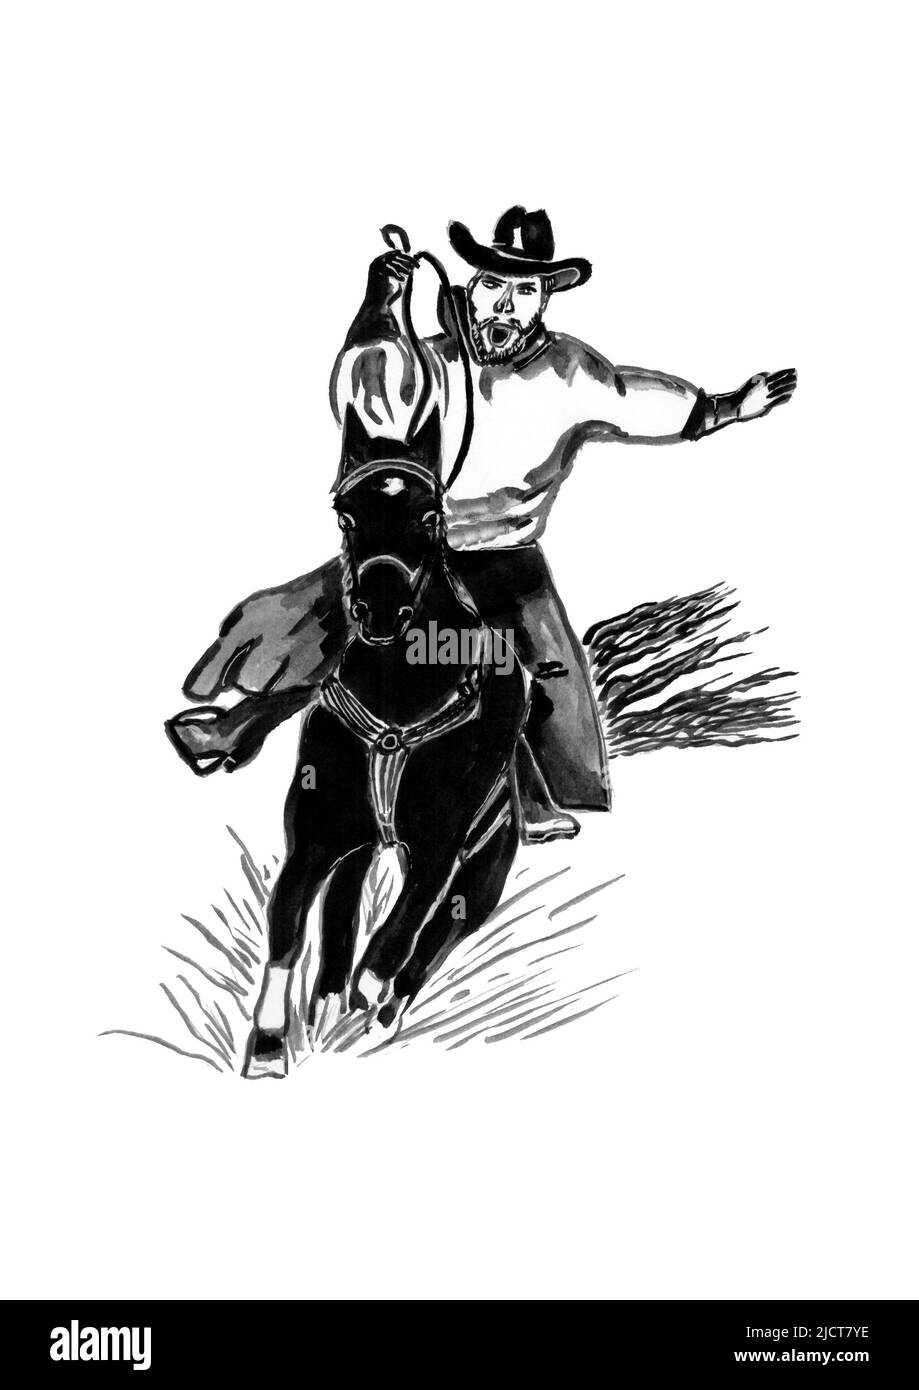 Aquarelle noir et blanc esquisse un cow-boy à cheval, cowboy rodéo à cheval, dessin d'encre, isolé sur un fond blanc Banque D'Images